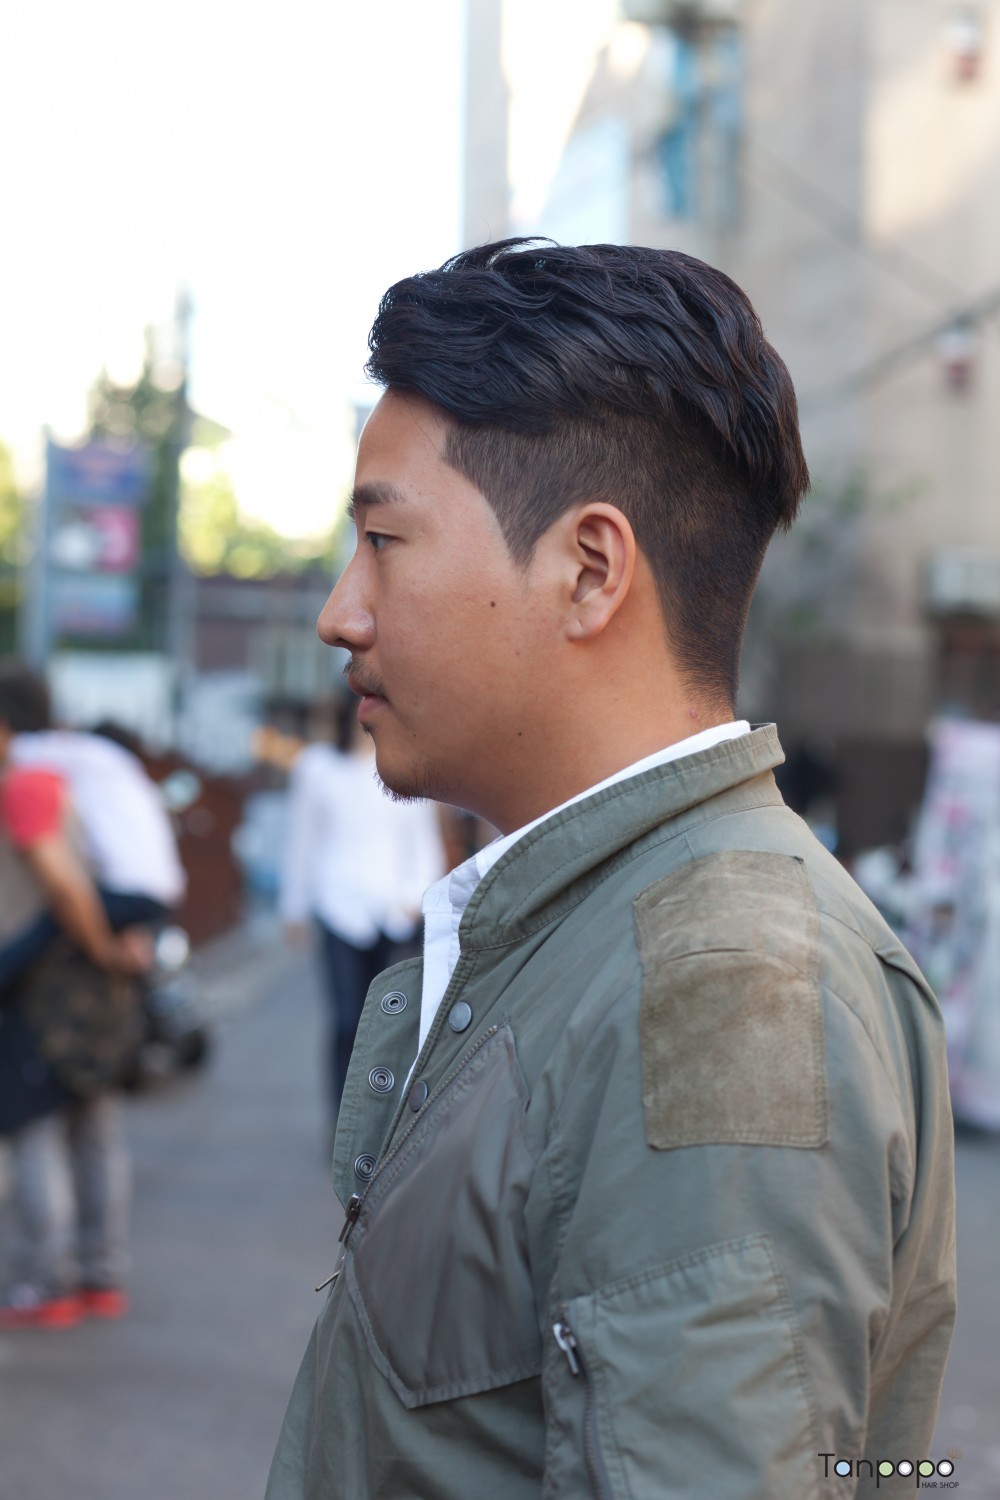 한국서울남성패션스타일헤어스타일-韓国のソウル男性ファッションスタイルヘアスタイル_004.jpg